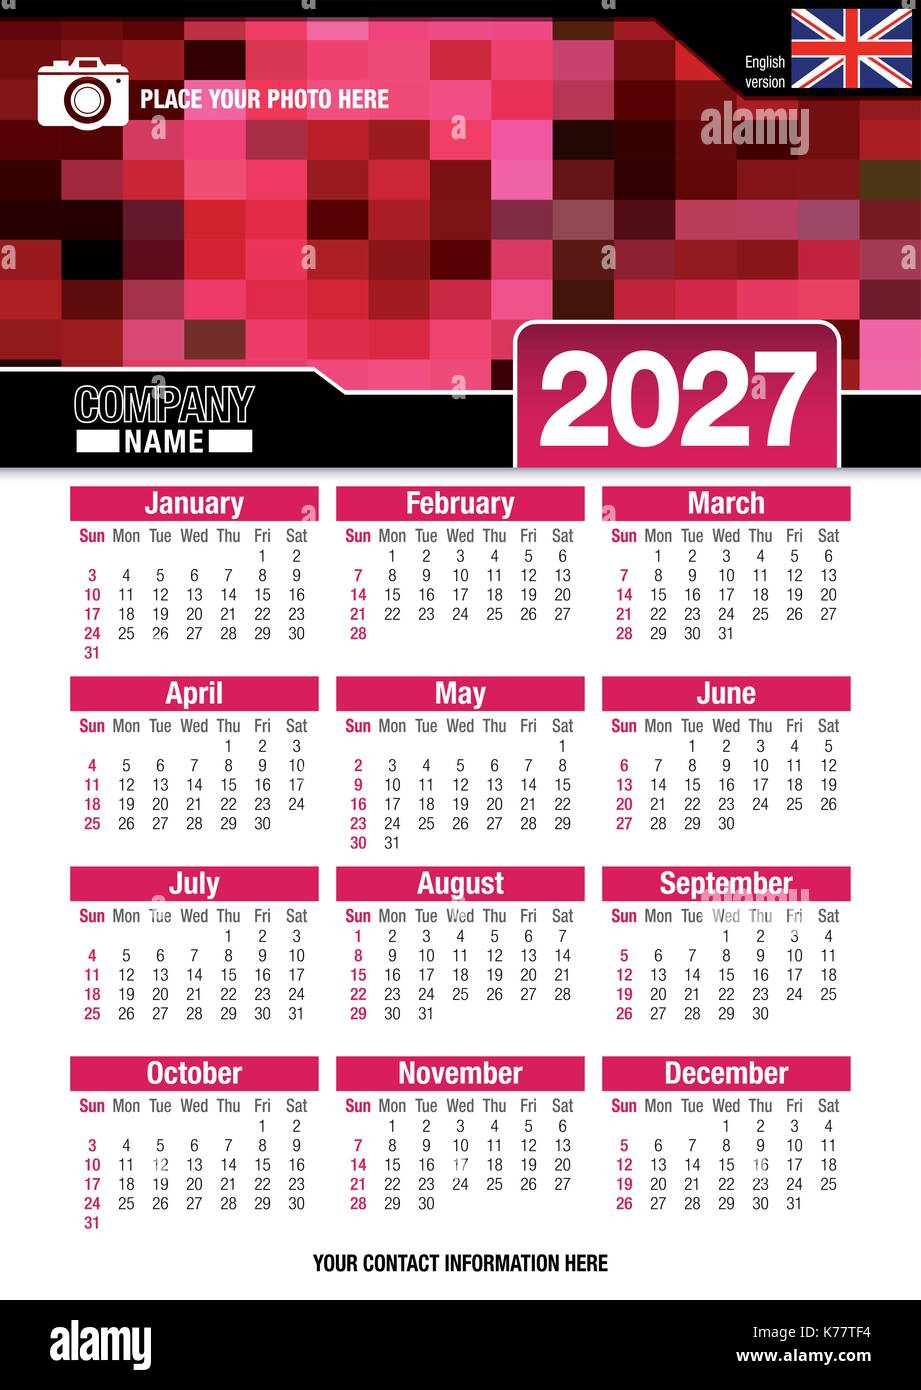 Utile calendario da parete 2027 con design di colori rosso mosaico. Formato A4 verticale. Dimensioni: 210mm x 297mm. Versione Inglese - immagine vettoriale Illustrazione Vettoriale